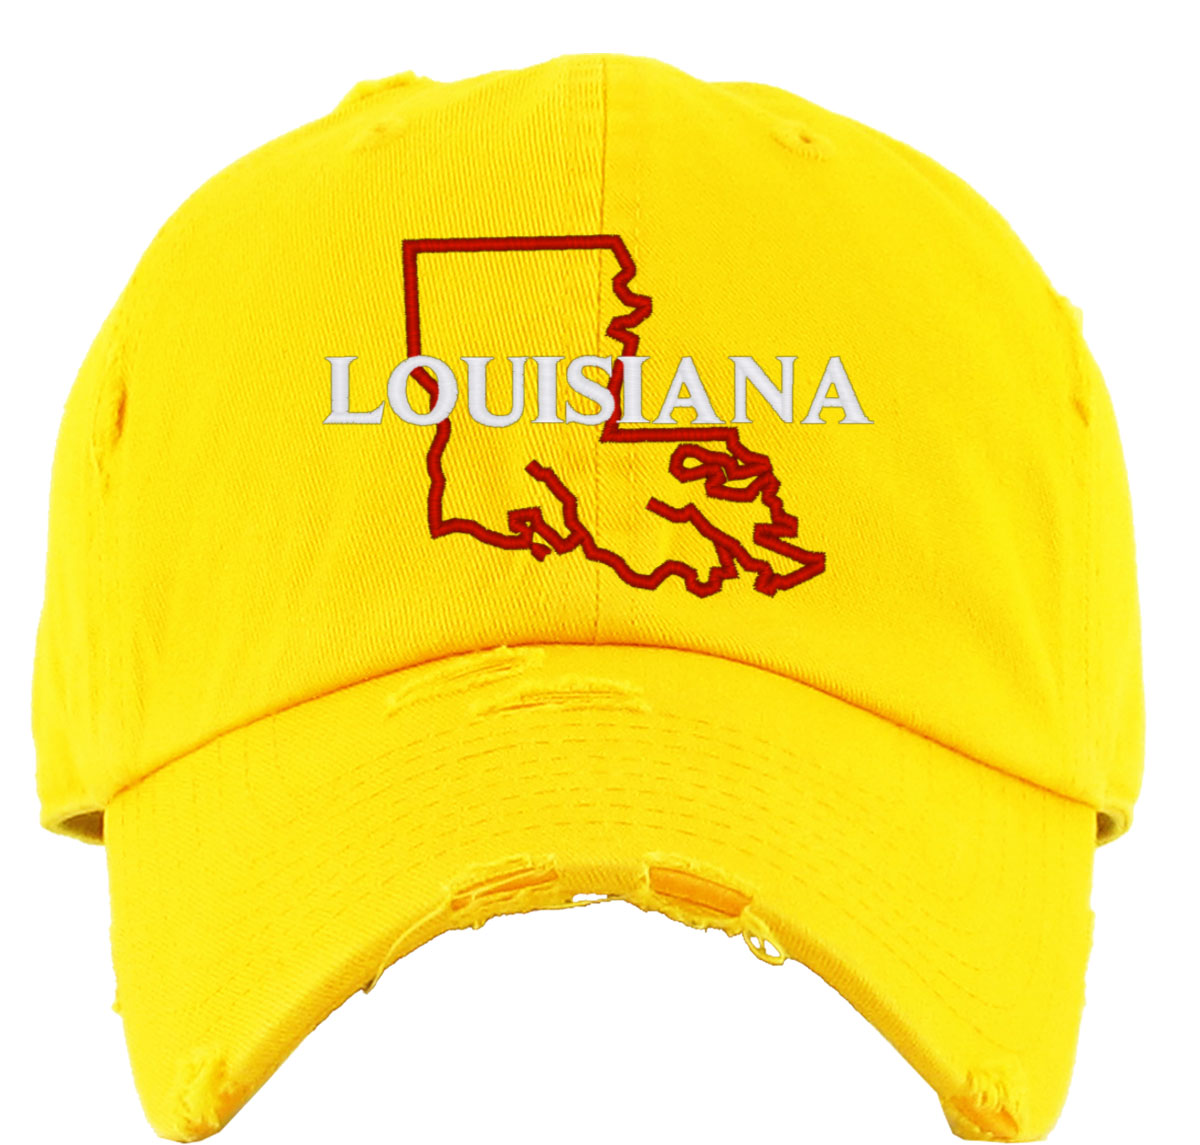 Louisiana Vintage Baseball Cap